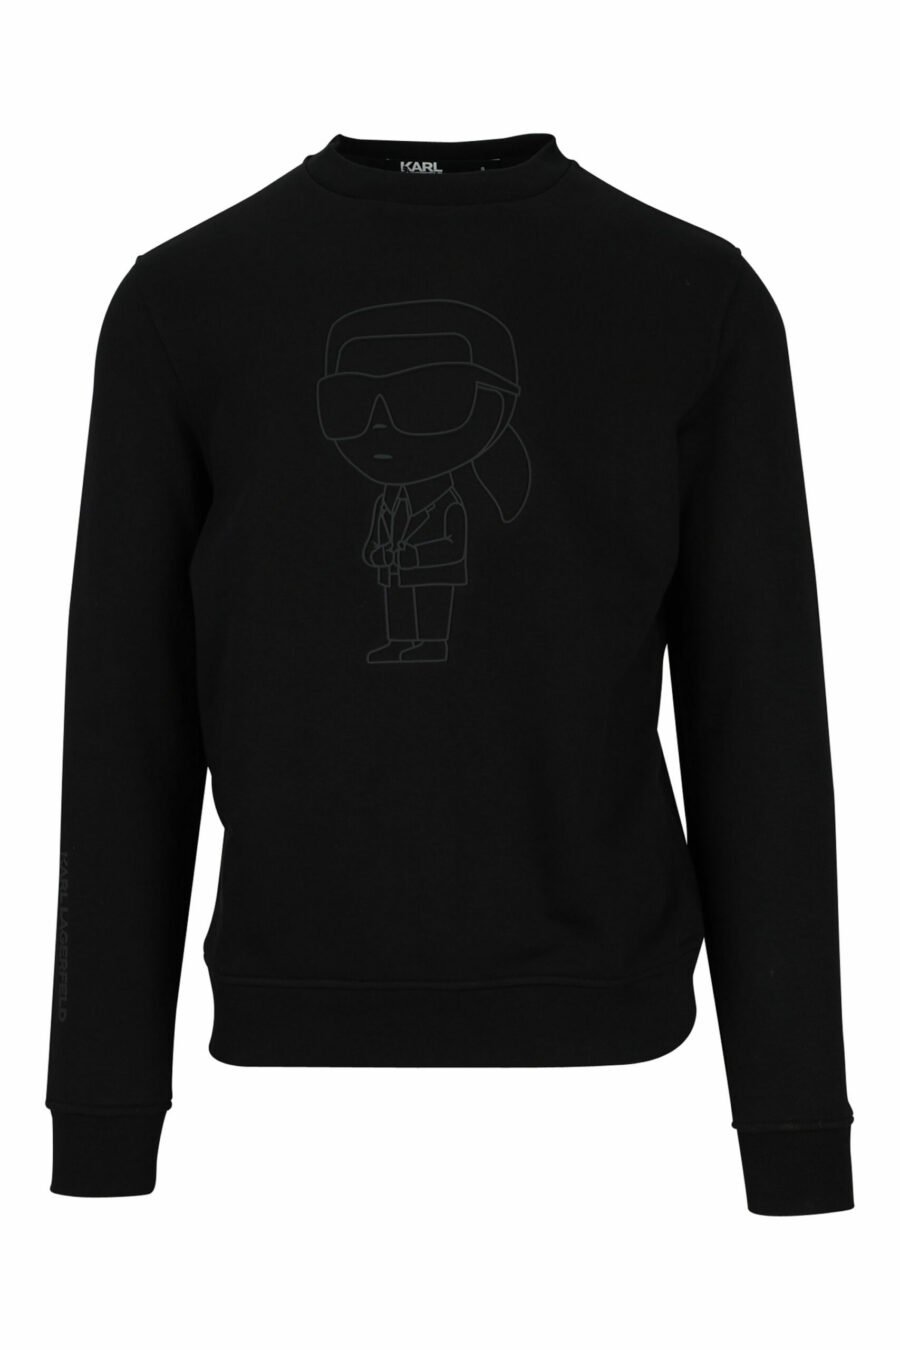 Schwarzes Sweatshirt mit einfarbig gummiertem Maxilogo - 4062226393256 skaliert